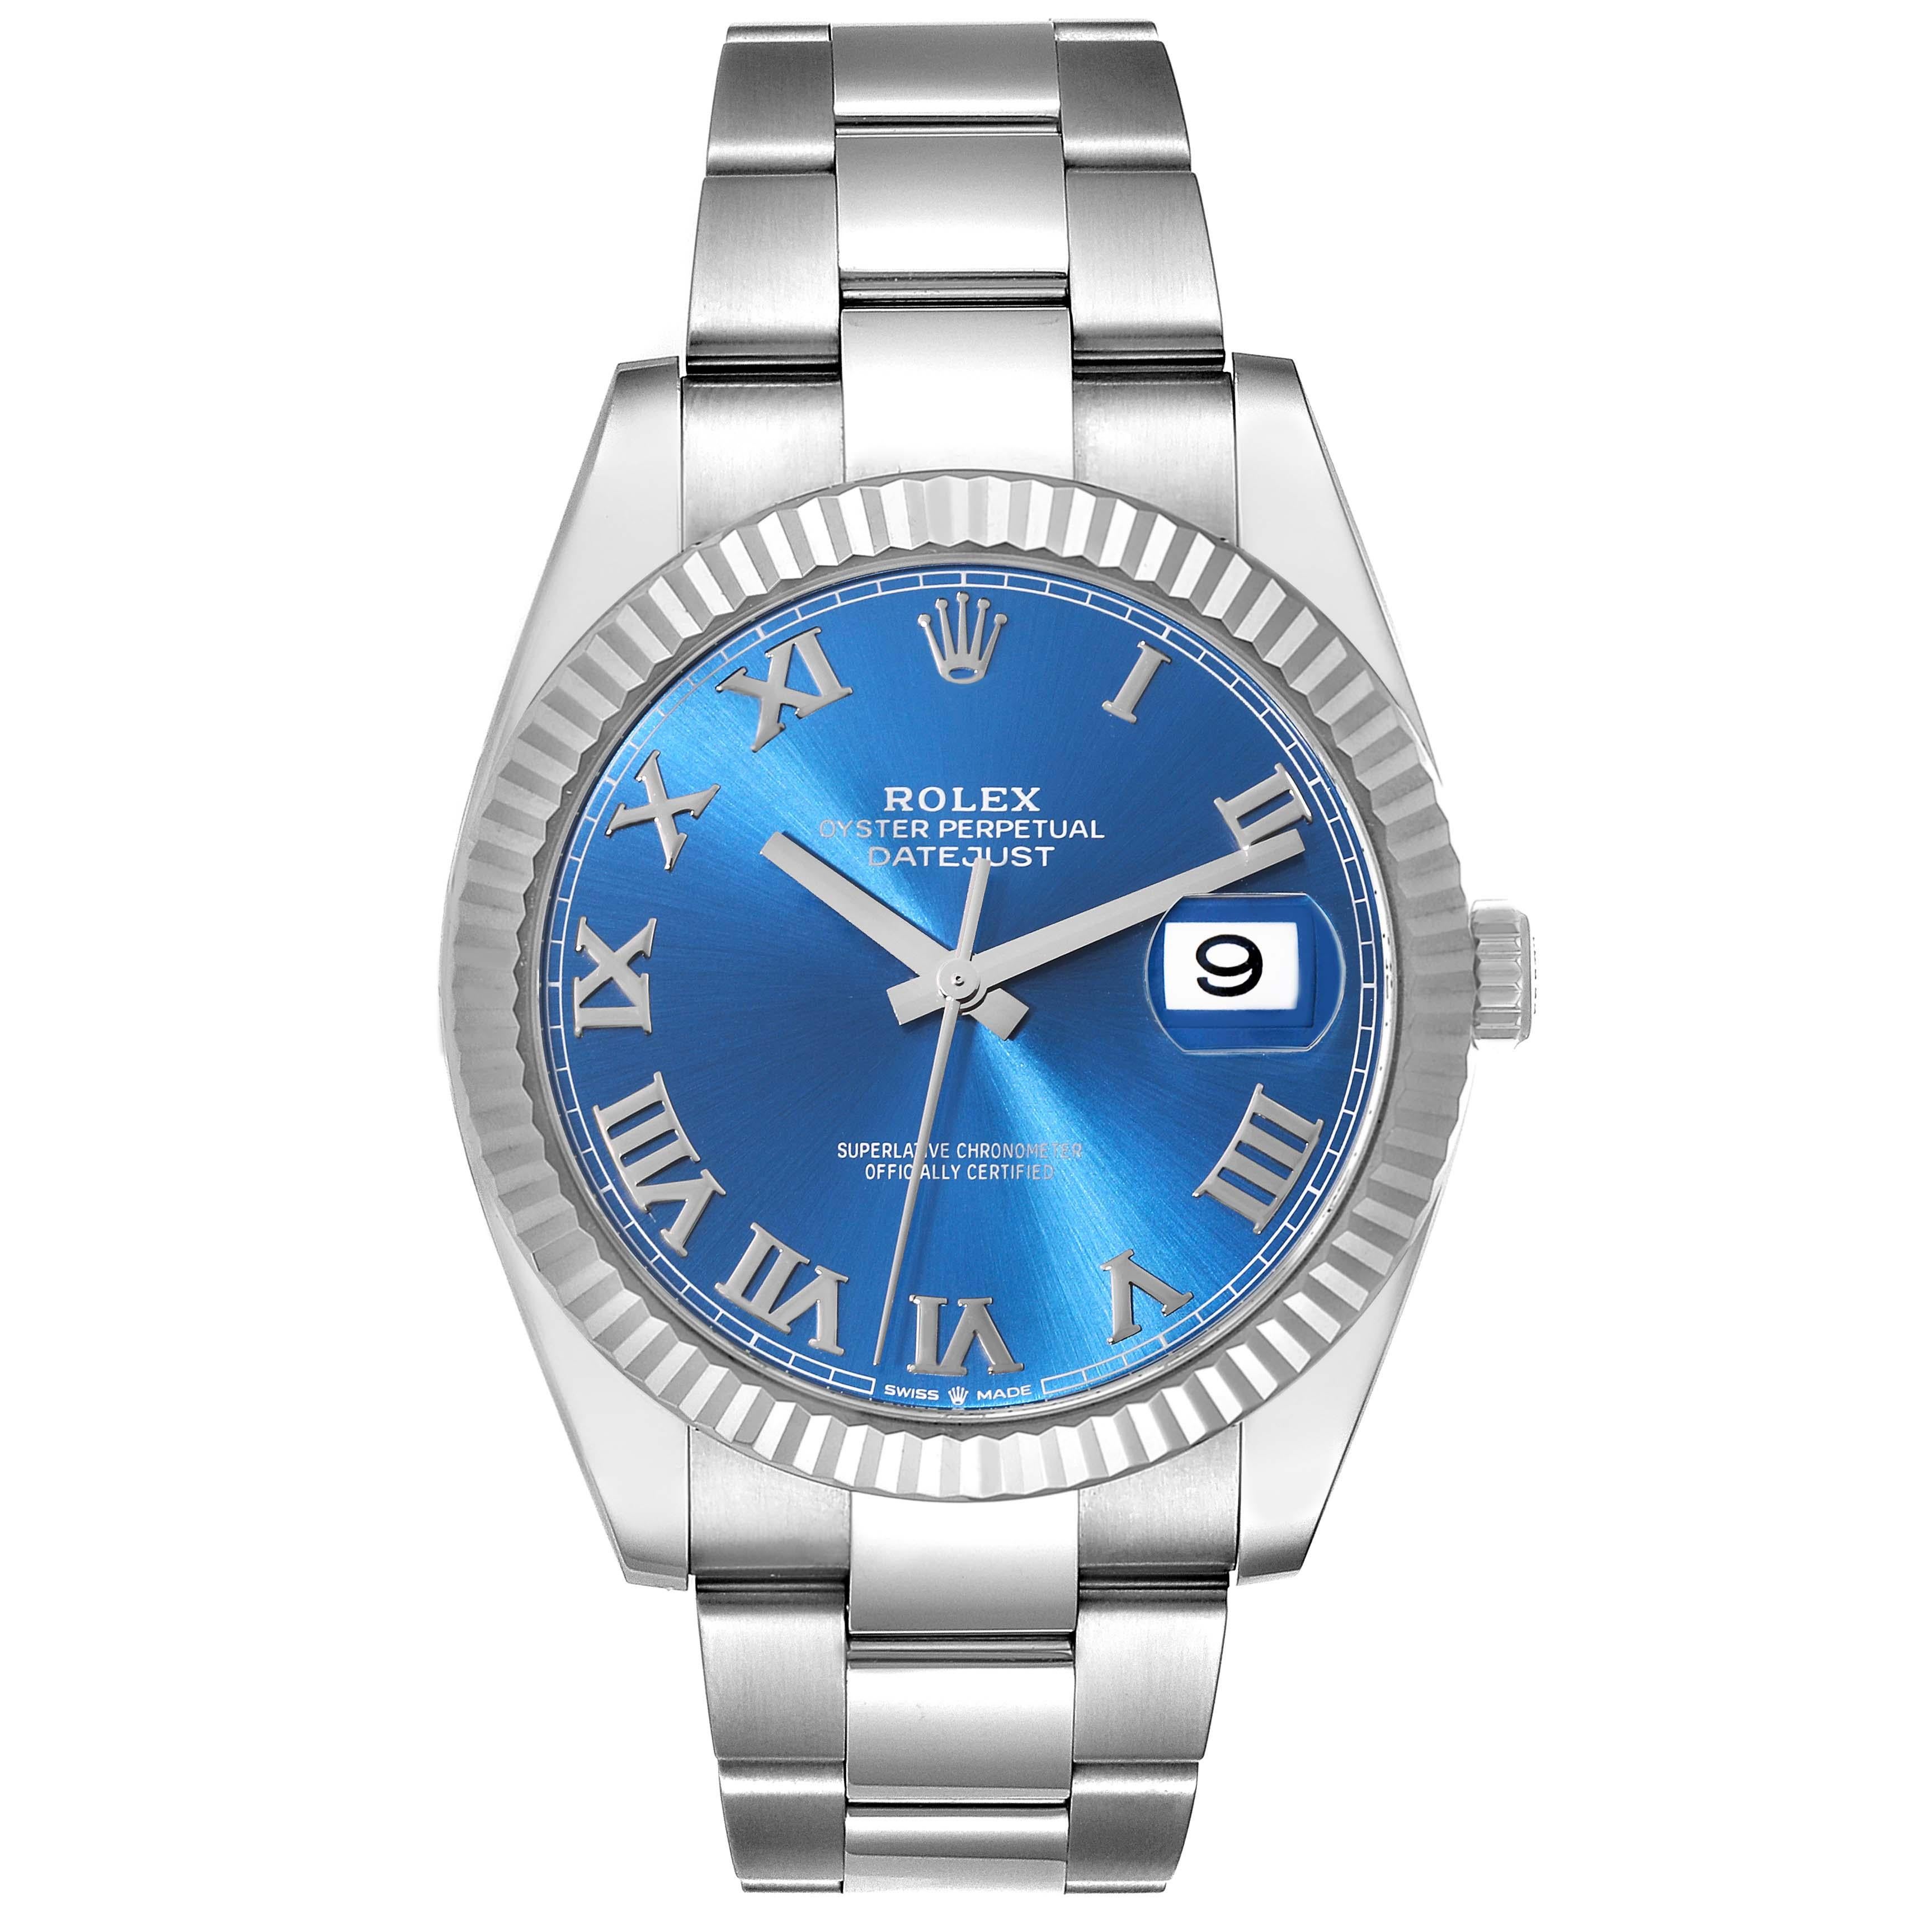 Rolex Datejust 41 Steel White Gold Blue Roman Dial Mens Watch 126334. Mouvement automatique à remontage automatique, officiellement certifié chronomètre. Boîtier en acier inoxydable de 41 mm de diamètre. Logo Rolex sur la couronne. Lunette cannelée